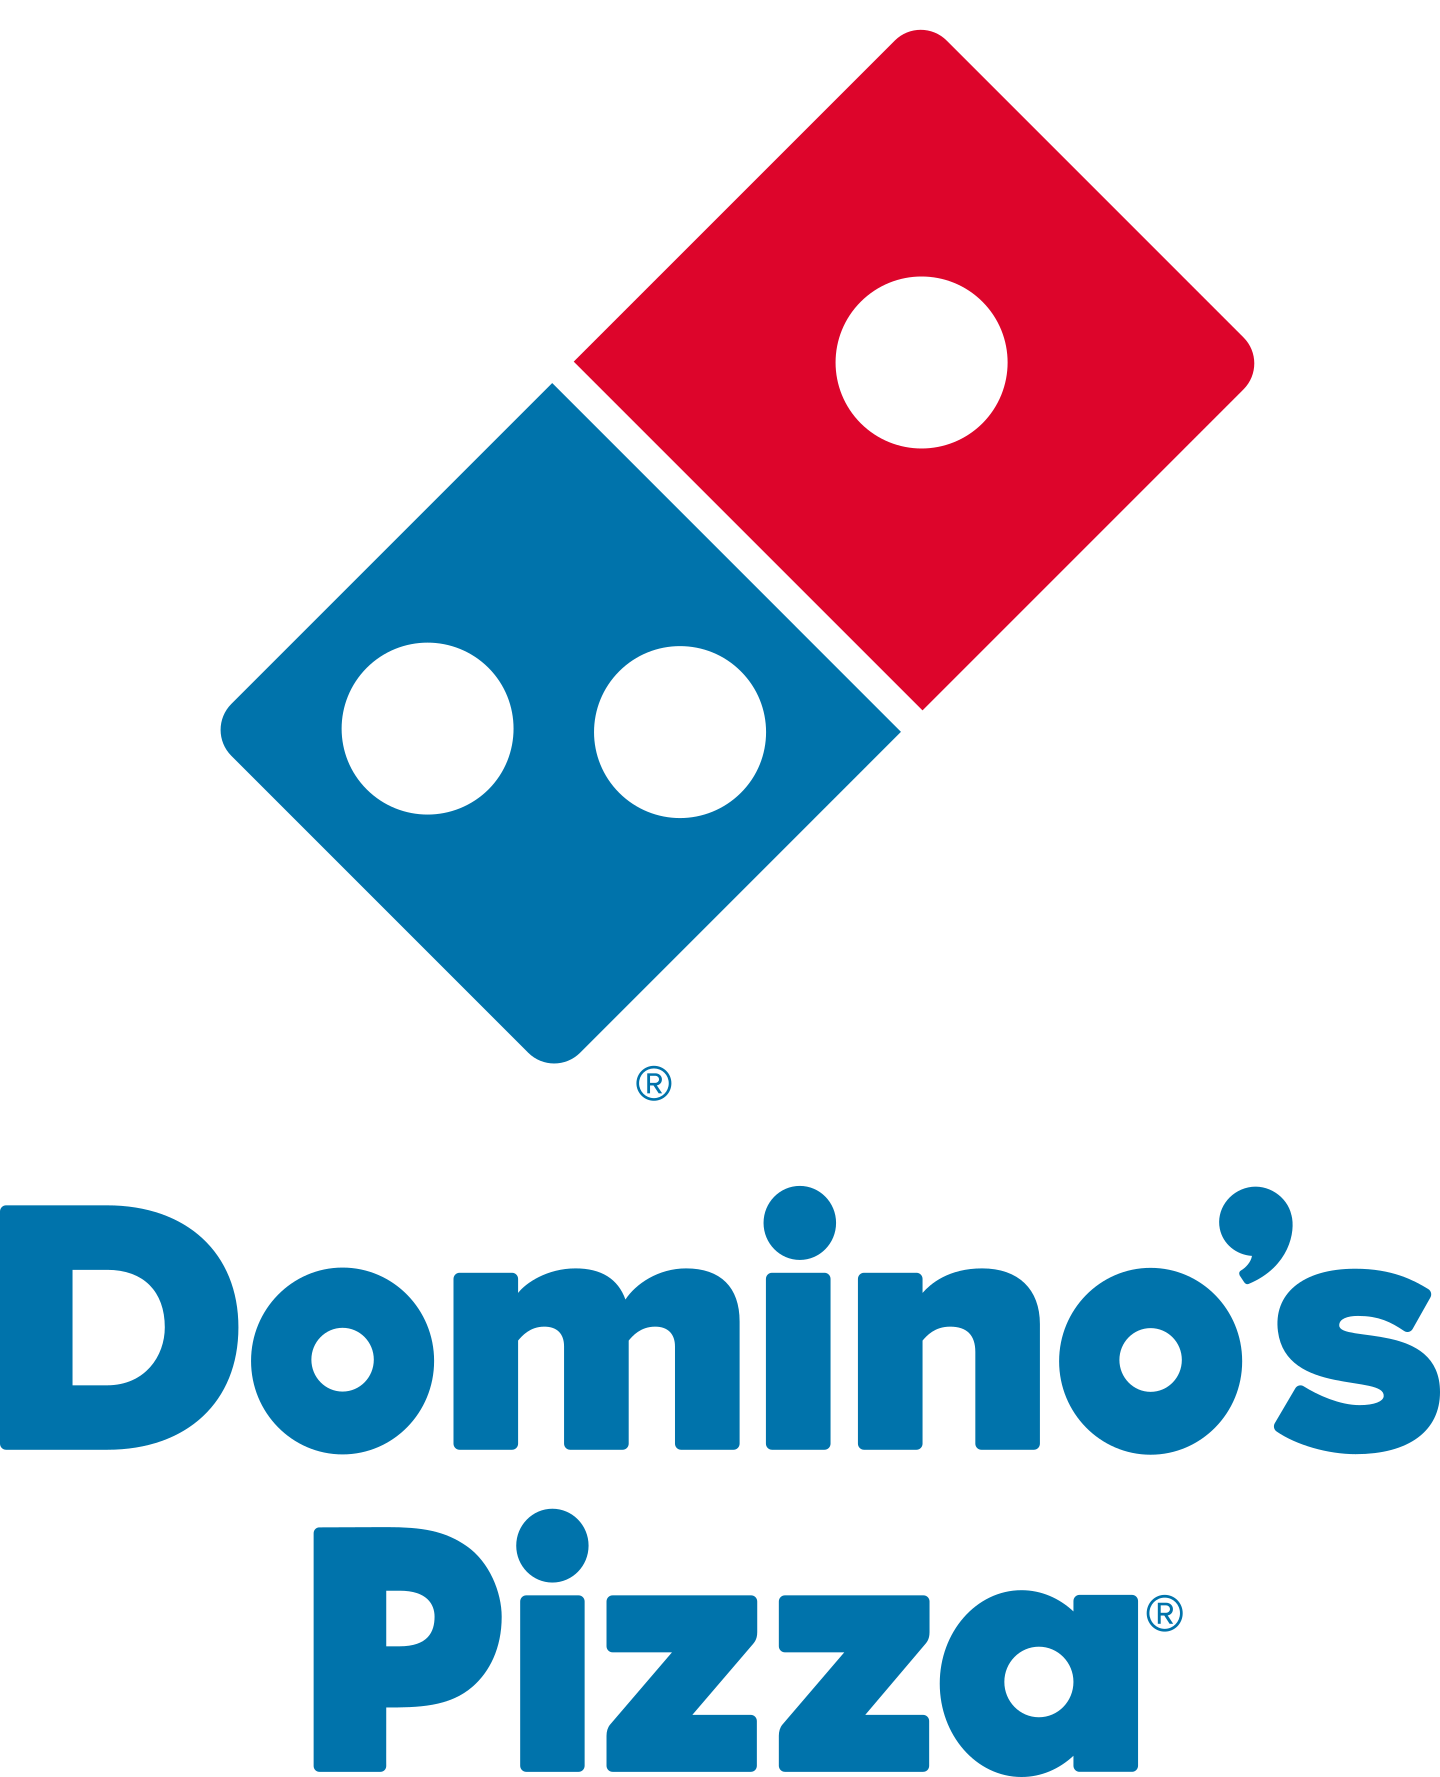 dominos pizza logo 3 - Domino's Pizza Logo